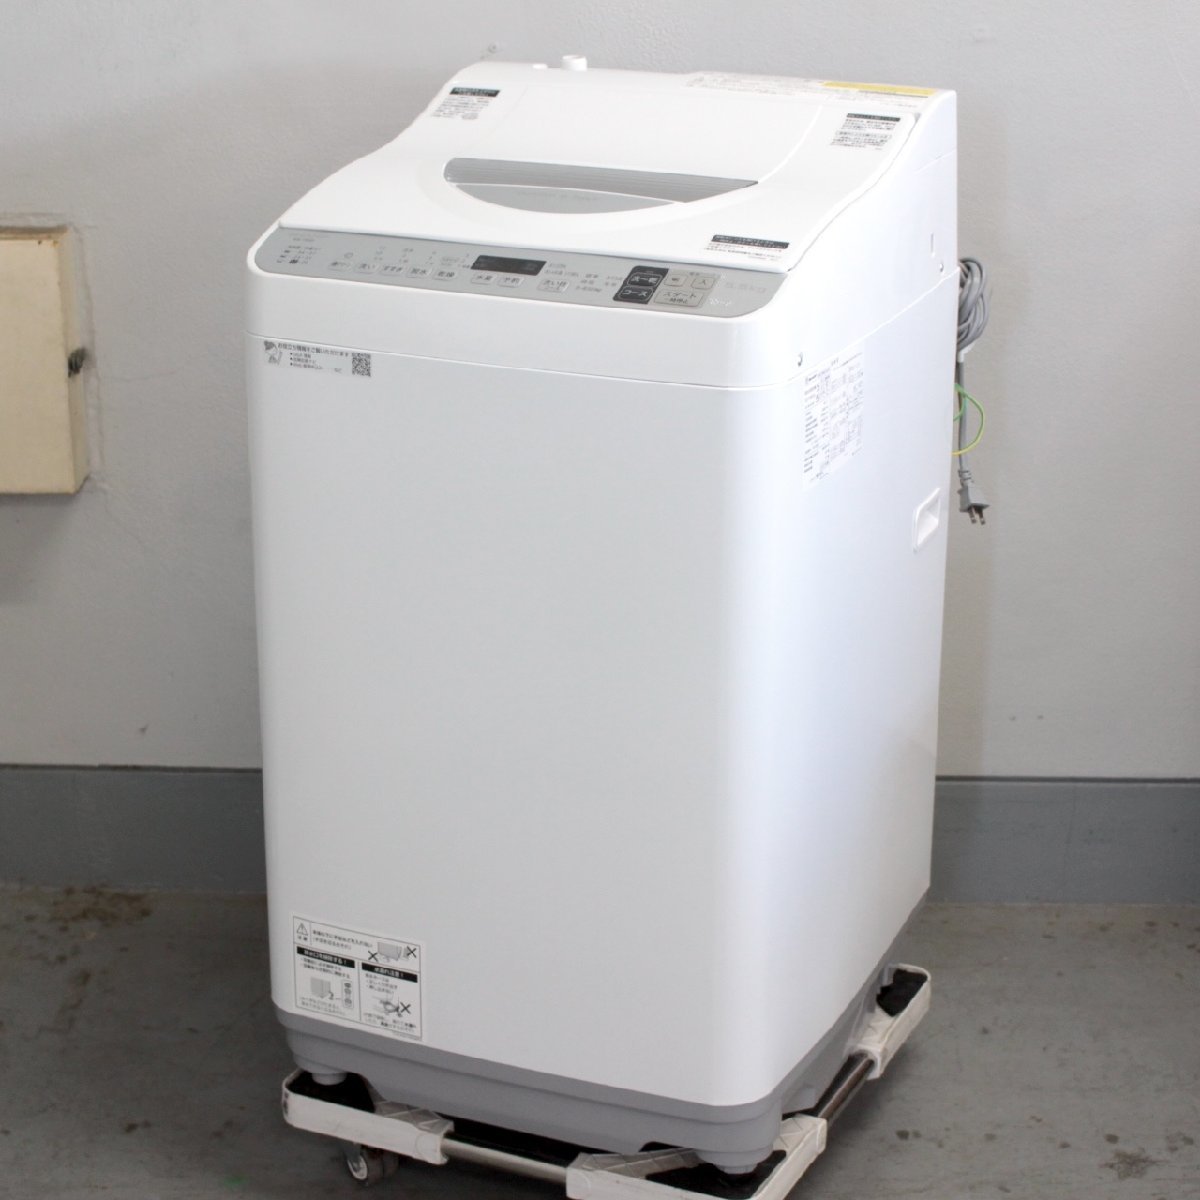 東京都狛江市にて シャープ 洗濯機 ES-TX5D-S 2020年製 を出張買取させて頂きました。